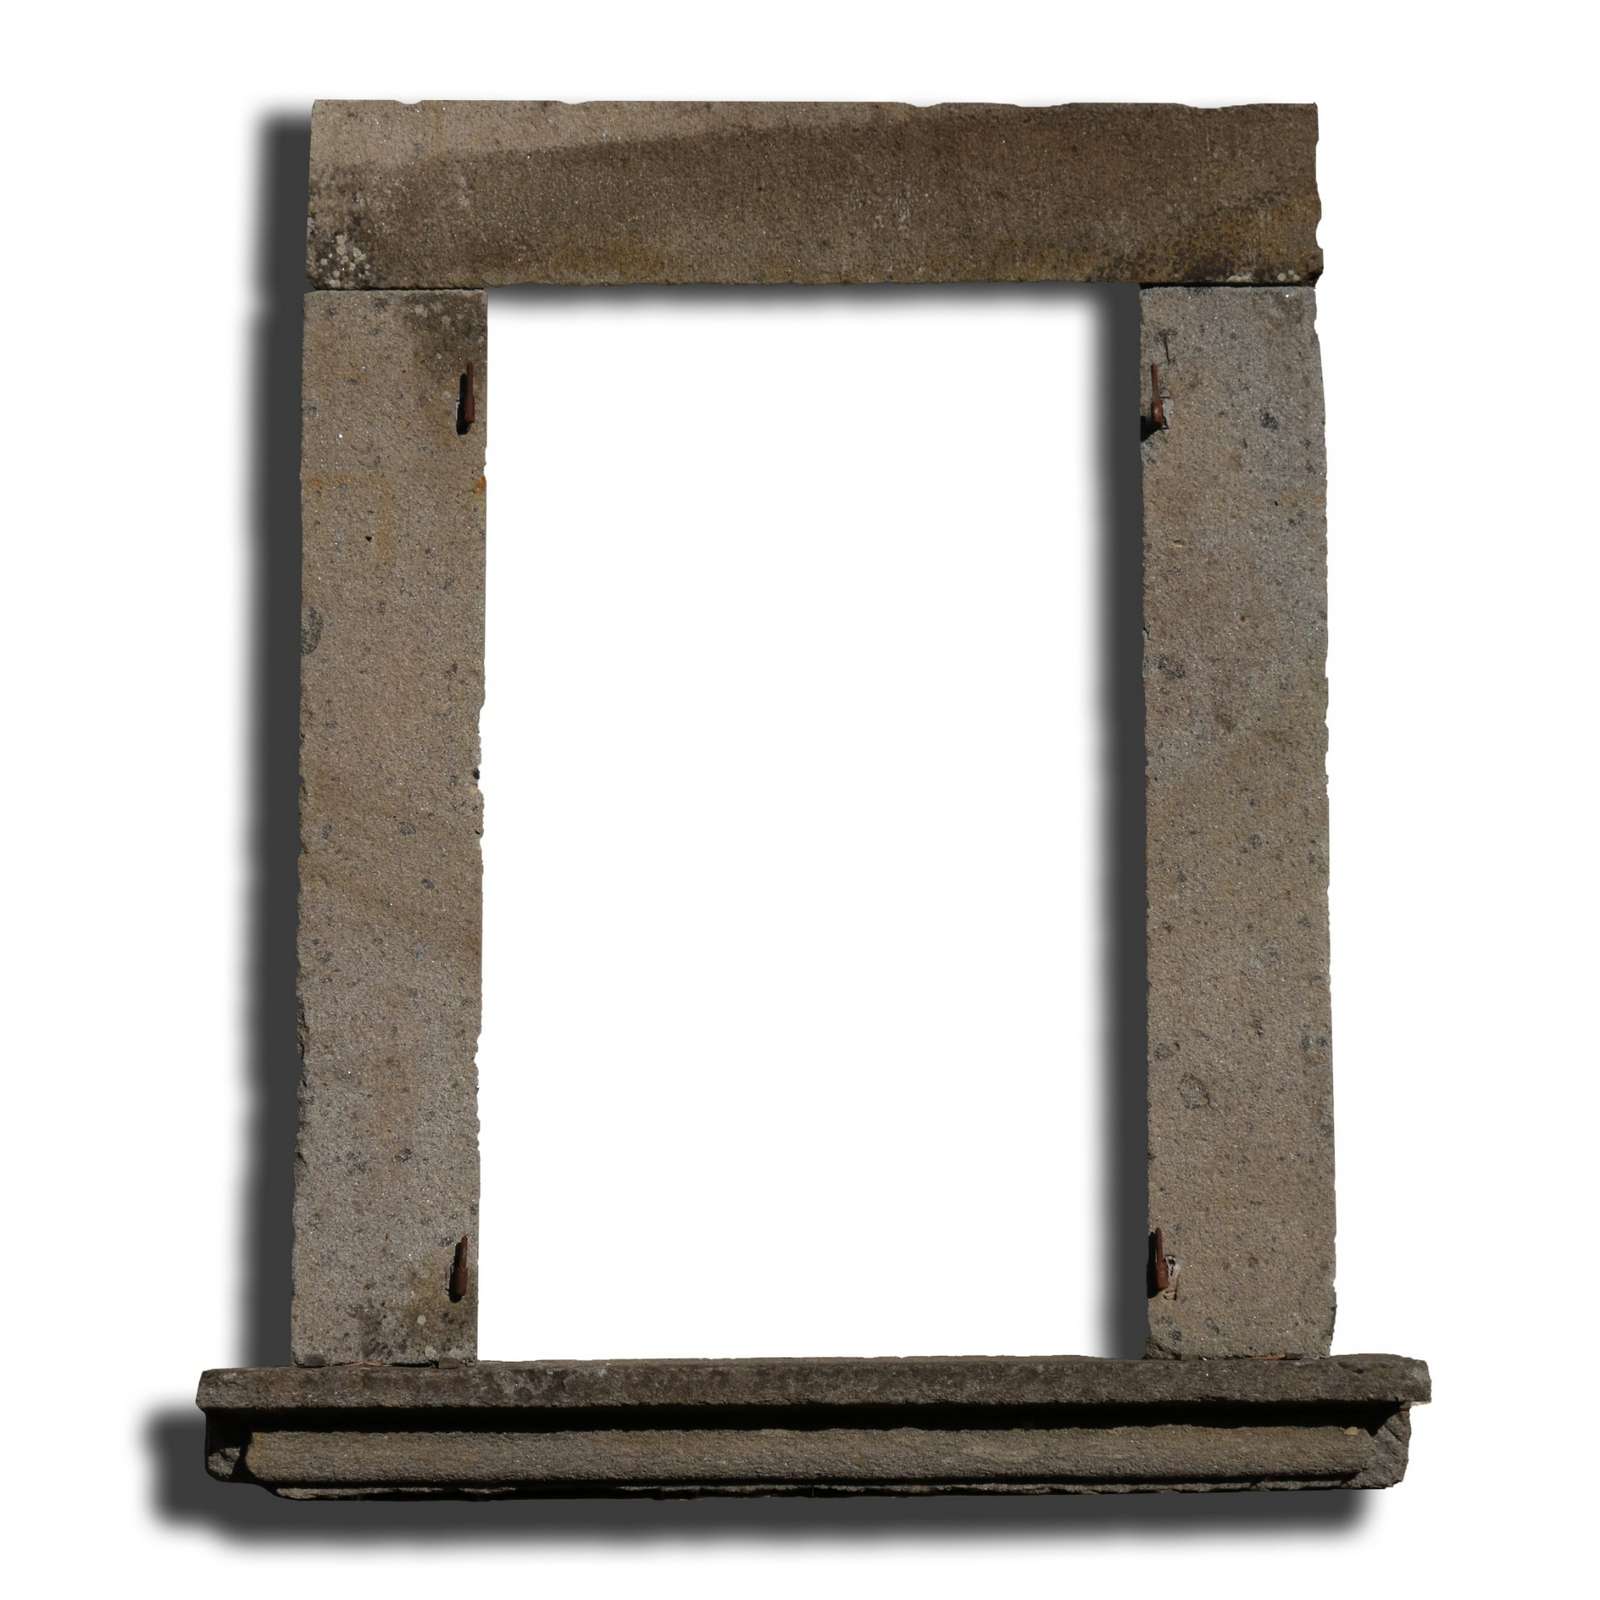 Antica finestra in pietra. Epoca 1800 - Portali, Finestre e Cornici - Architettura - Prodotti - Antichità Fiorillo